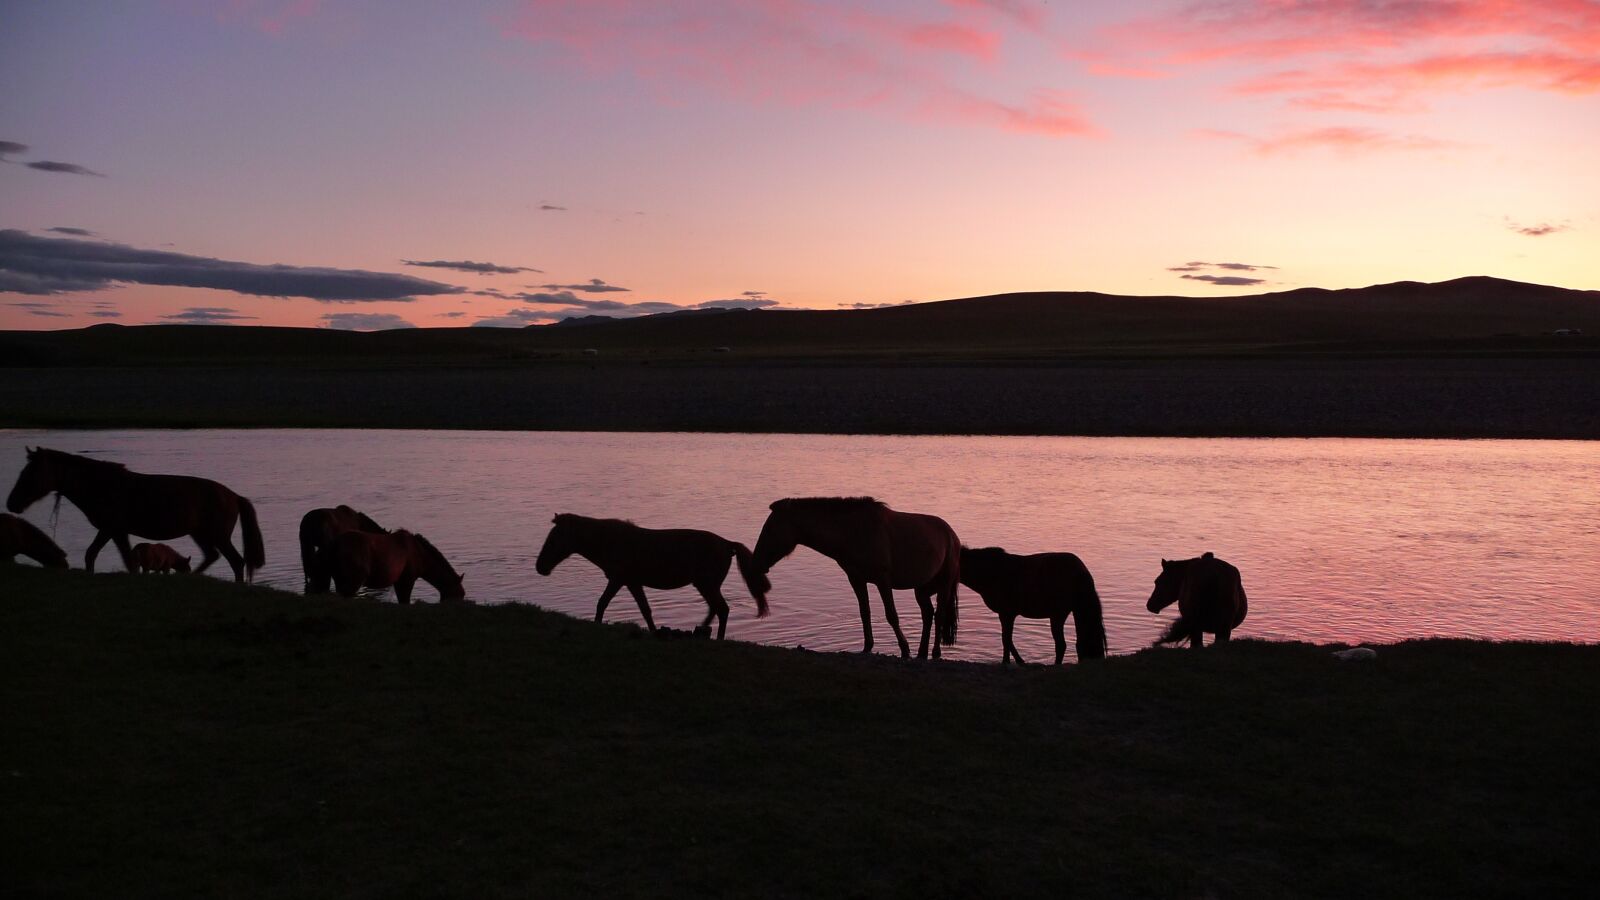 Panasonic Lumix DMC-TZ5 sample photo. Sunset, horses, mongolia photography